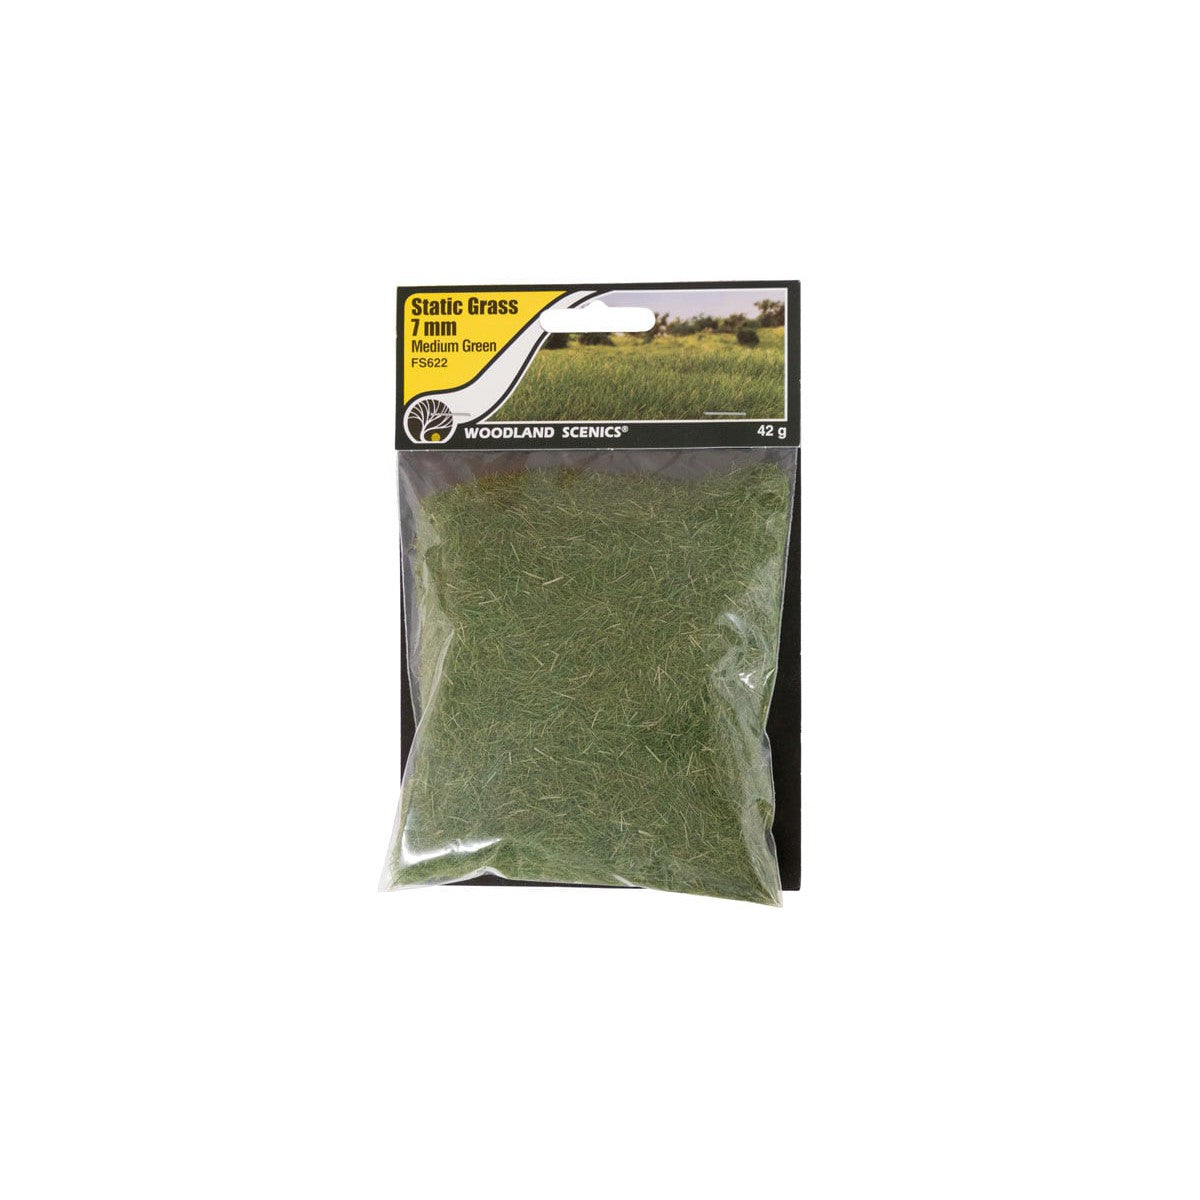 Woodland Scenics FS622 -- 7mm Static Grass Medium Green